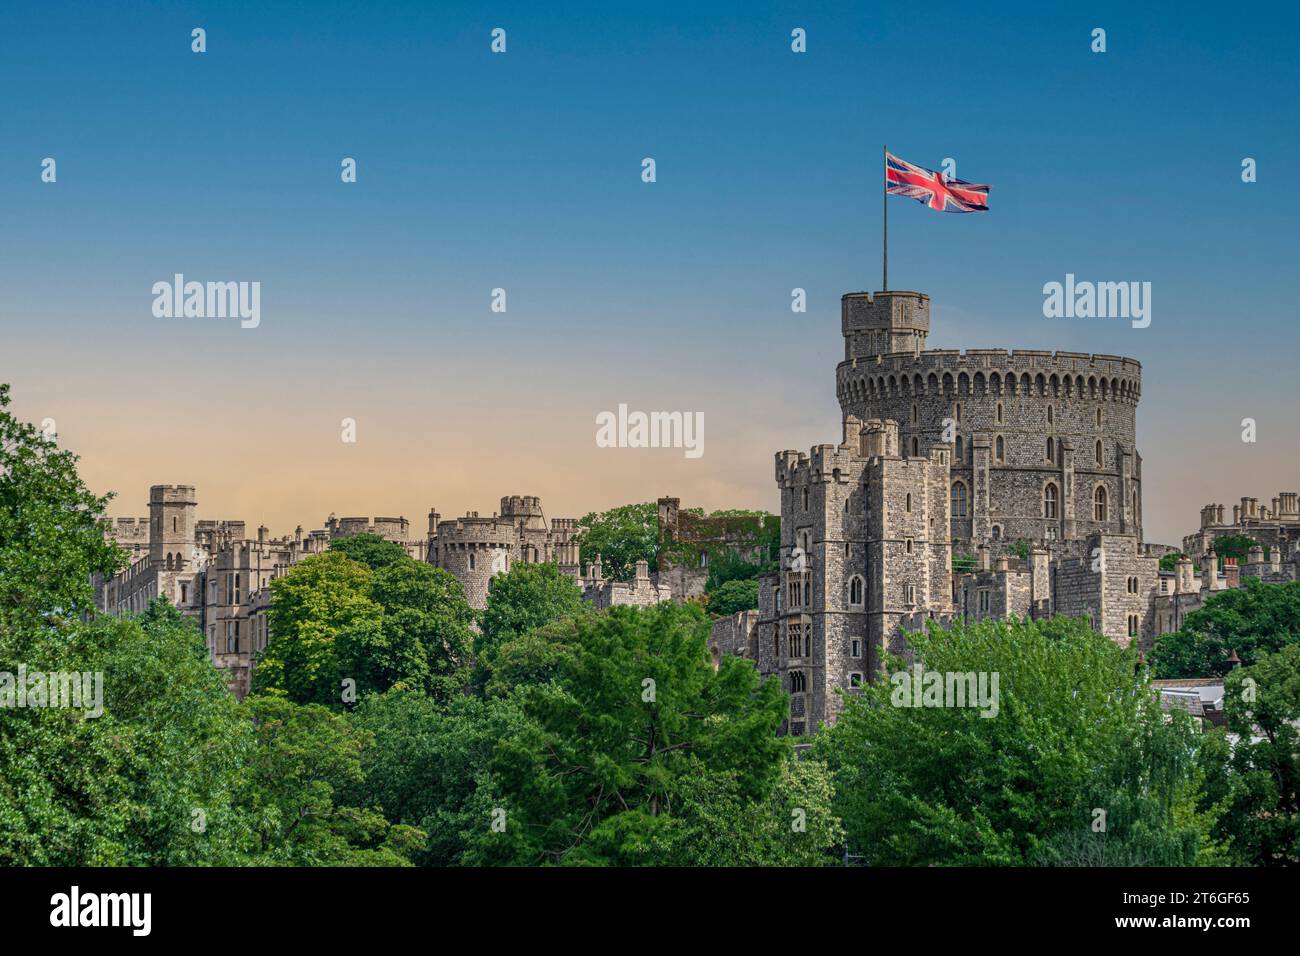 Castello di Windsor con la bandiera della British Union che soffia nel vento HDR High Dynamic Range Foto Stock